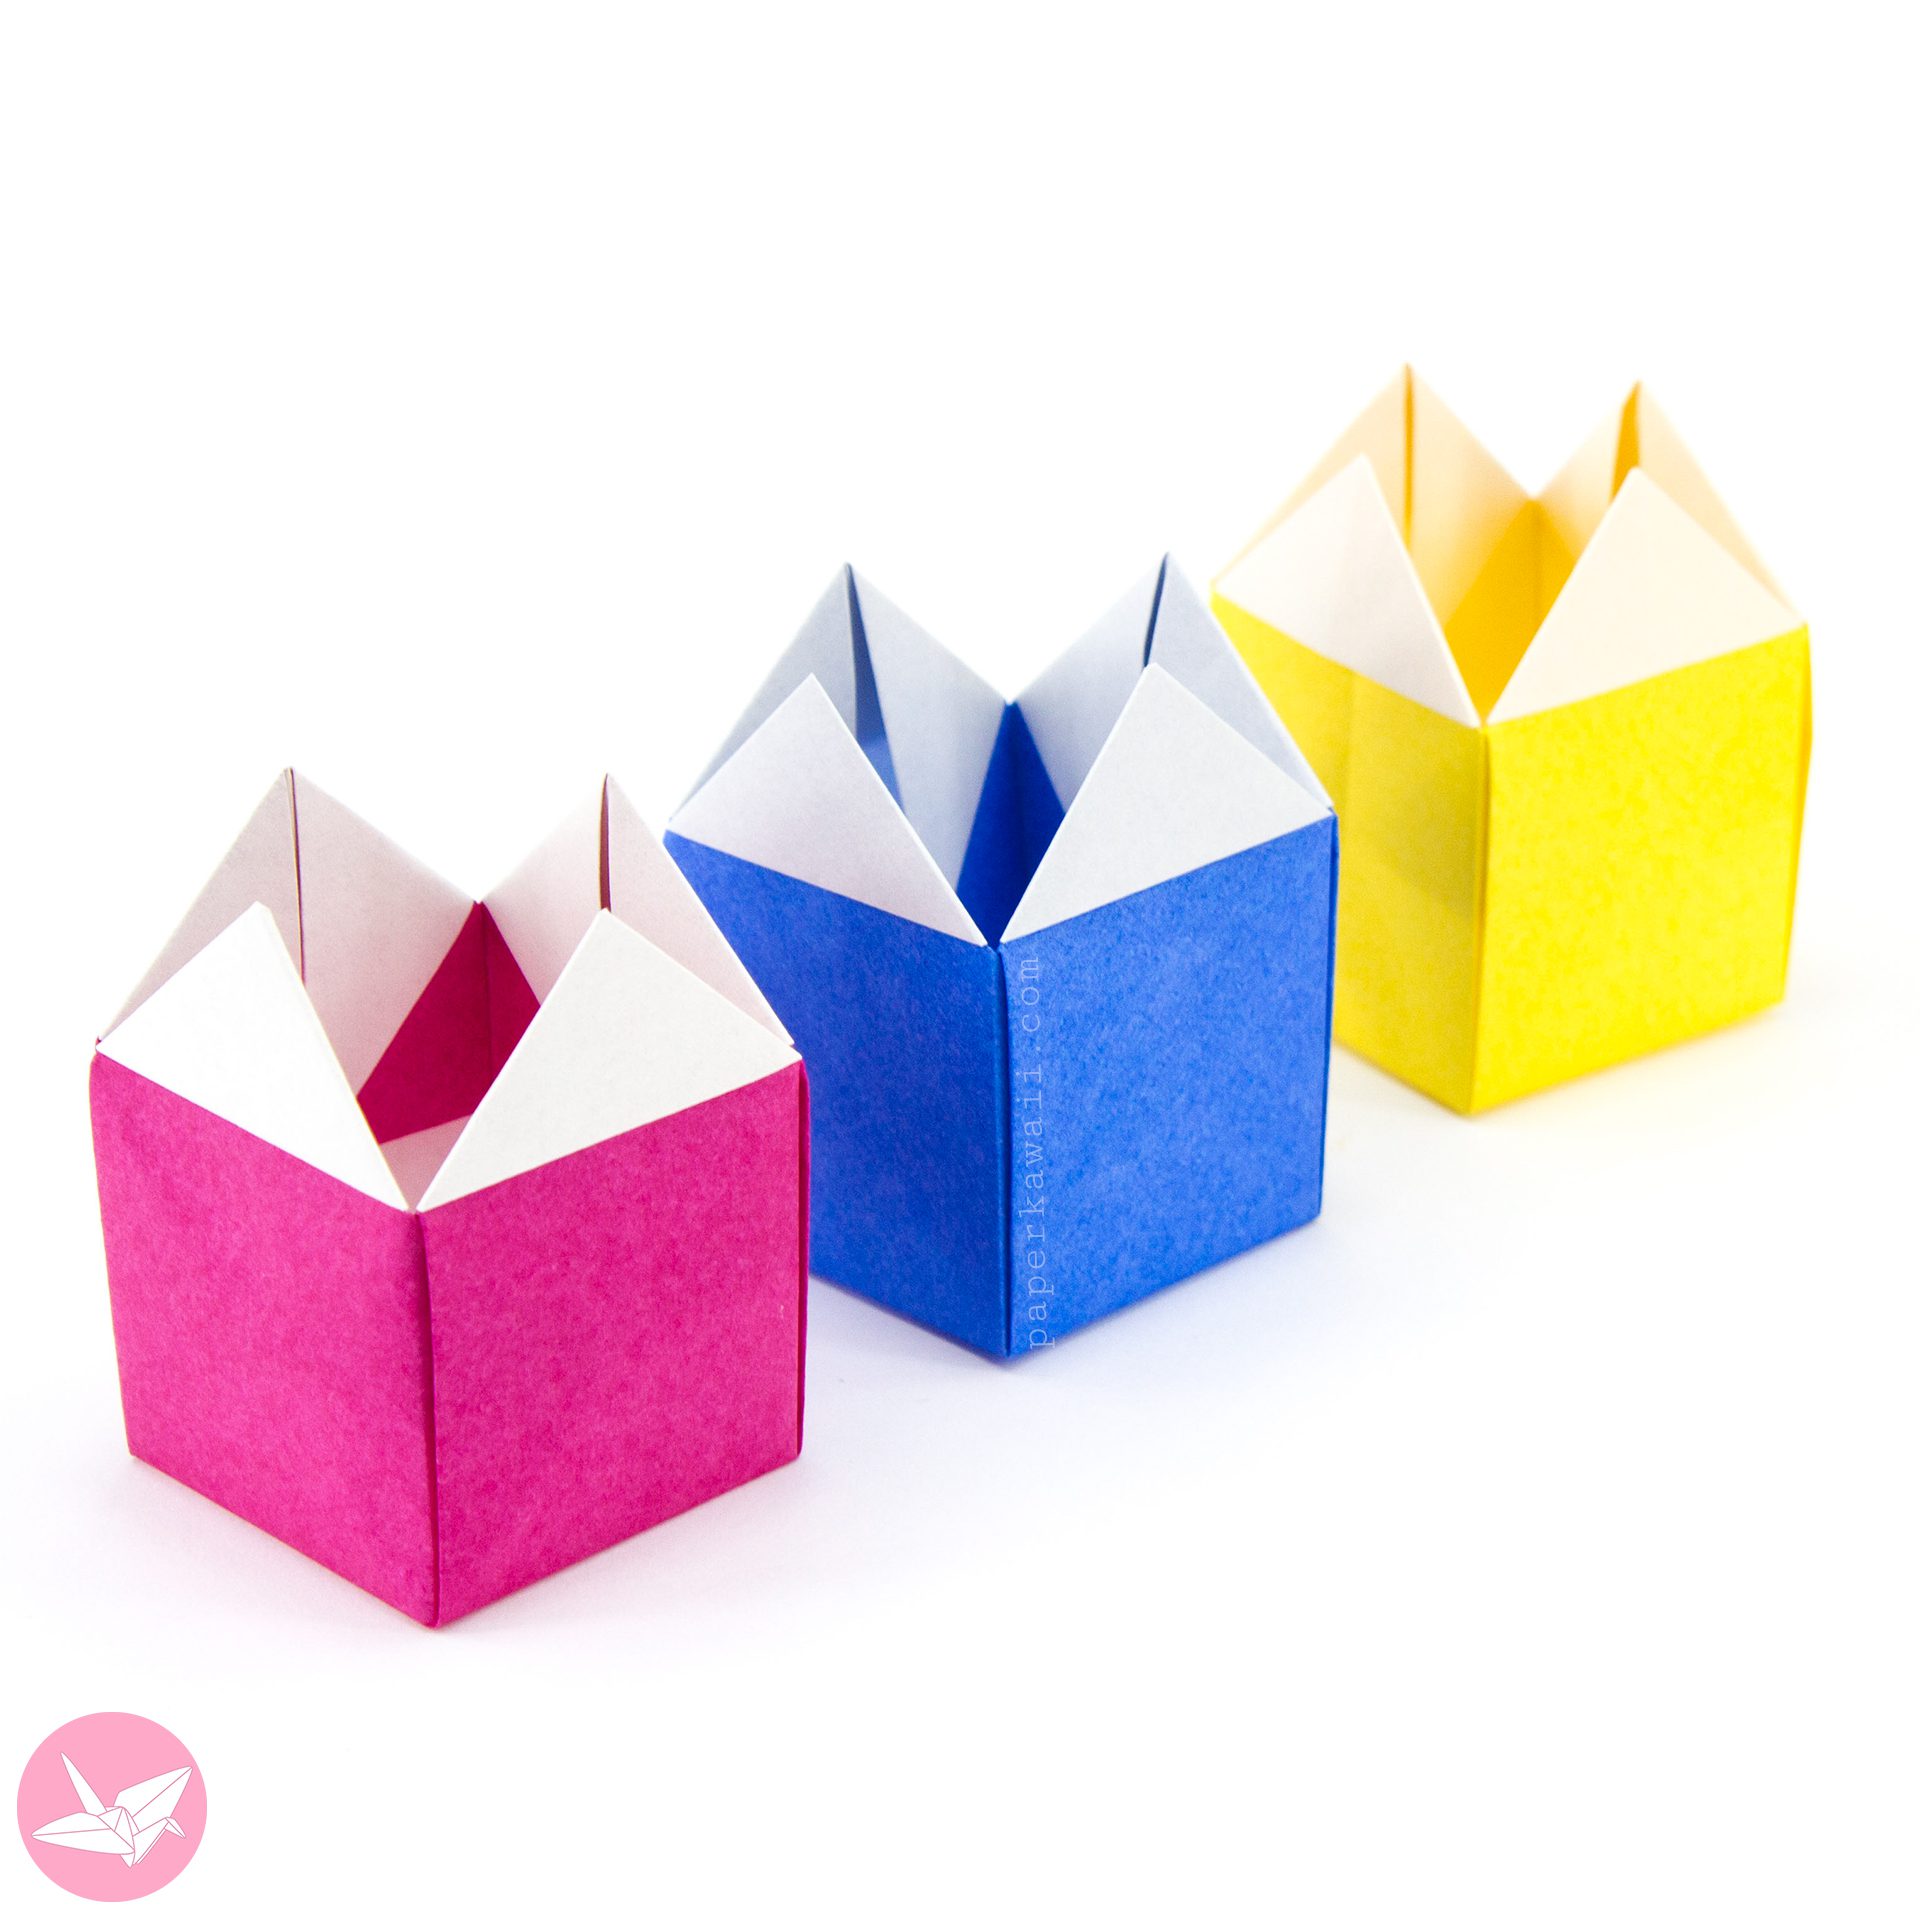 Origami Stacking House Box Box Paper Kawaii 03